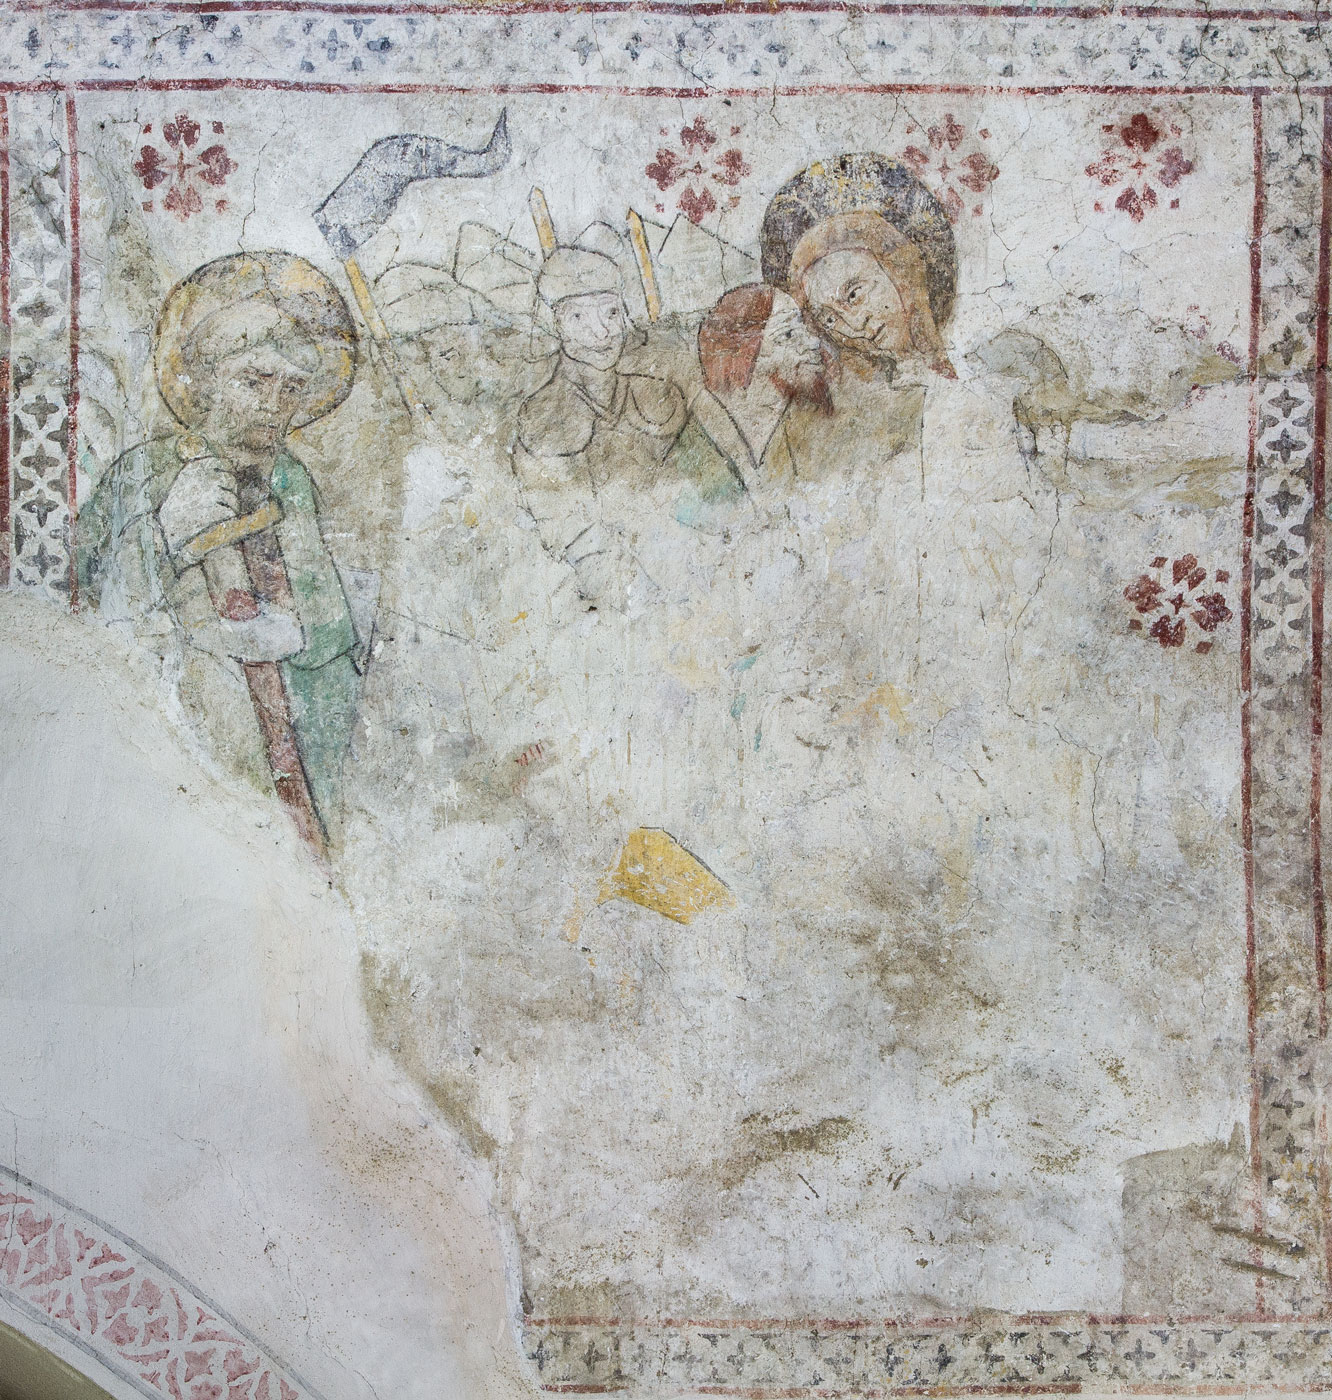 Judaskyssen och fragment av Malcus-episoden - Almunge kyrka